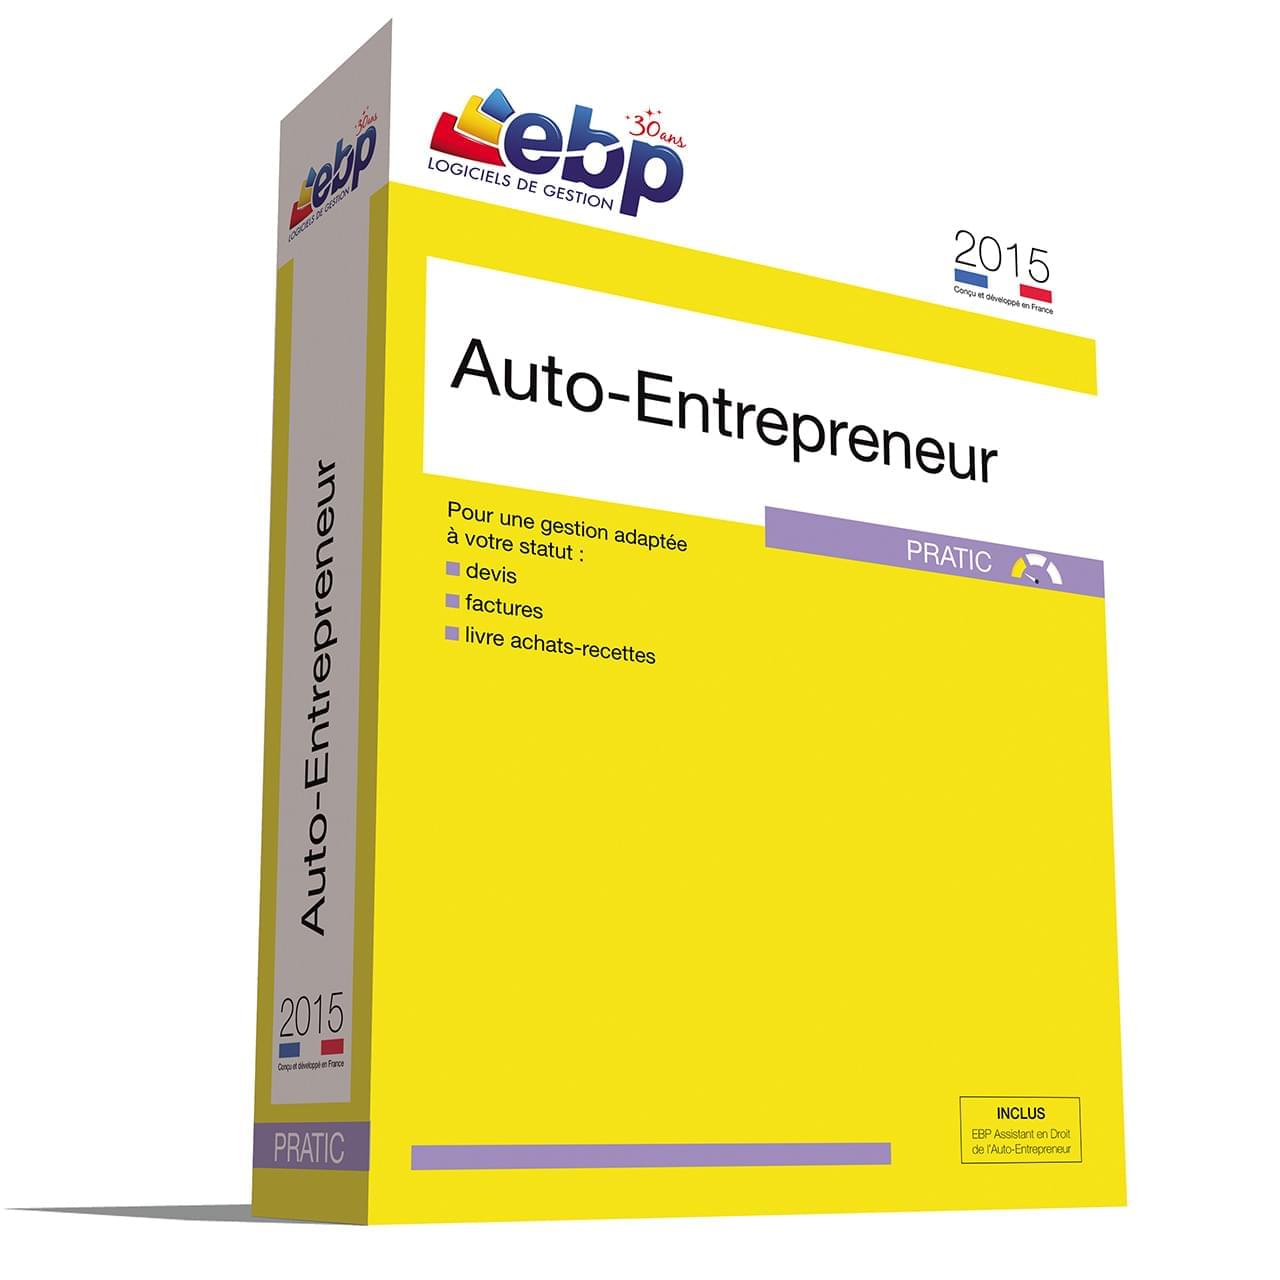 Logiciel application EBP Auto-Entrepreneur Pratic 2015